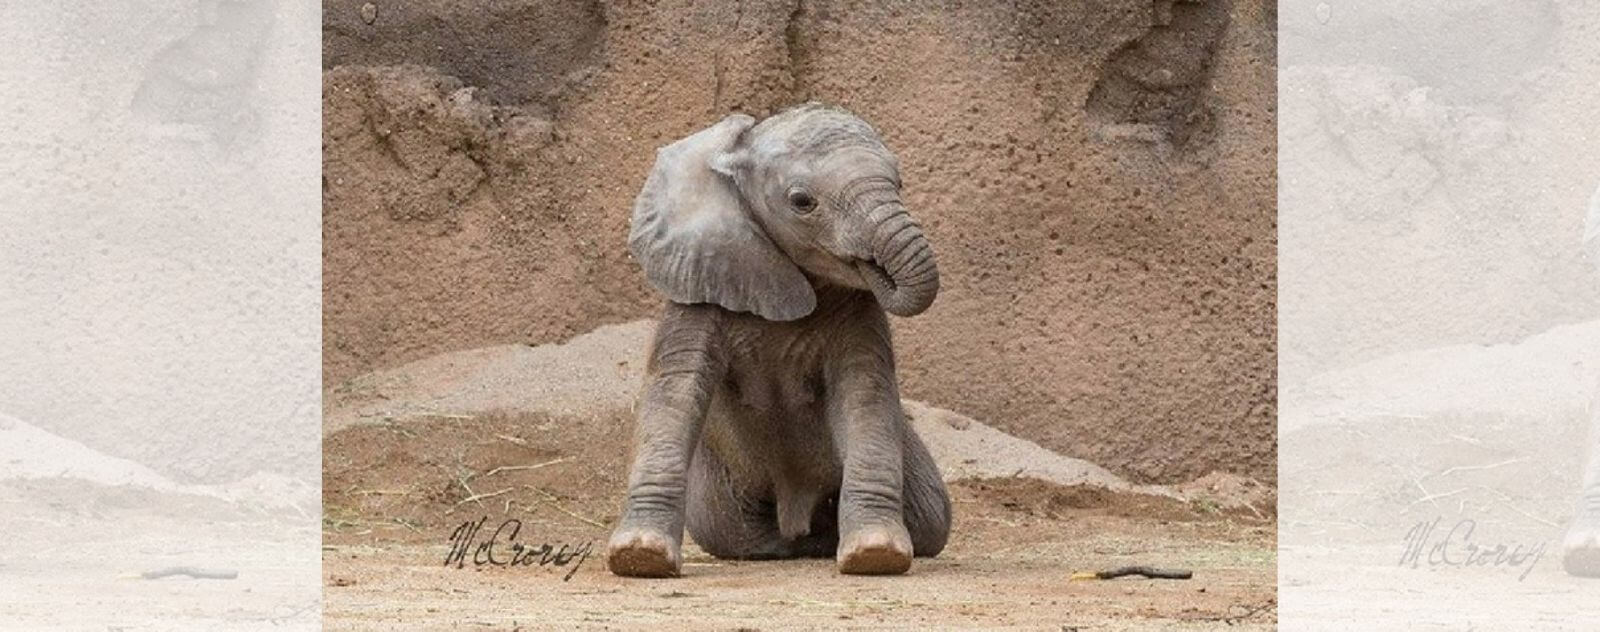 Elefante bebé chupando su trompa